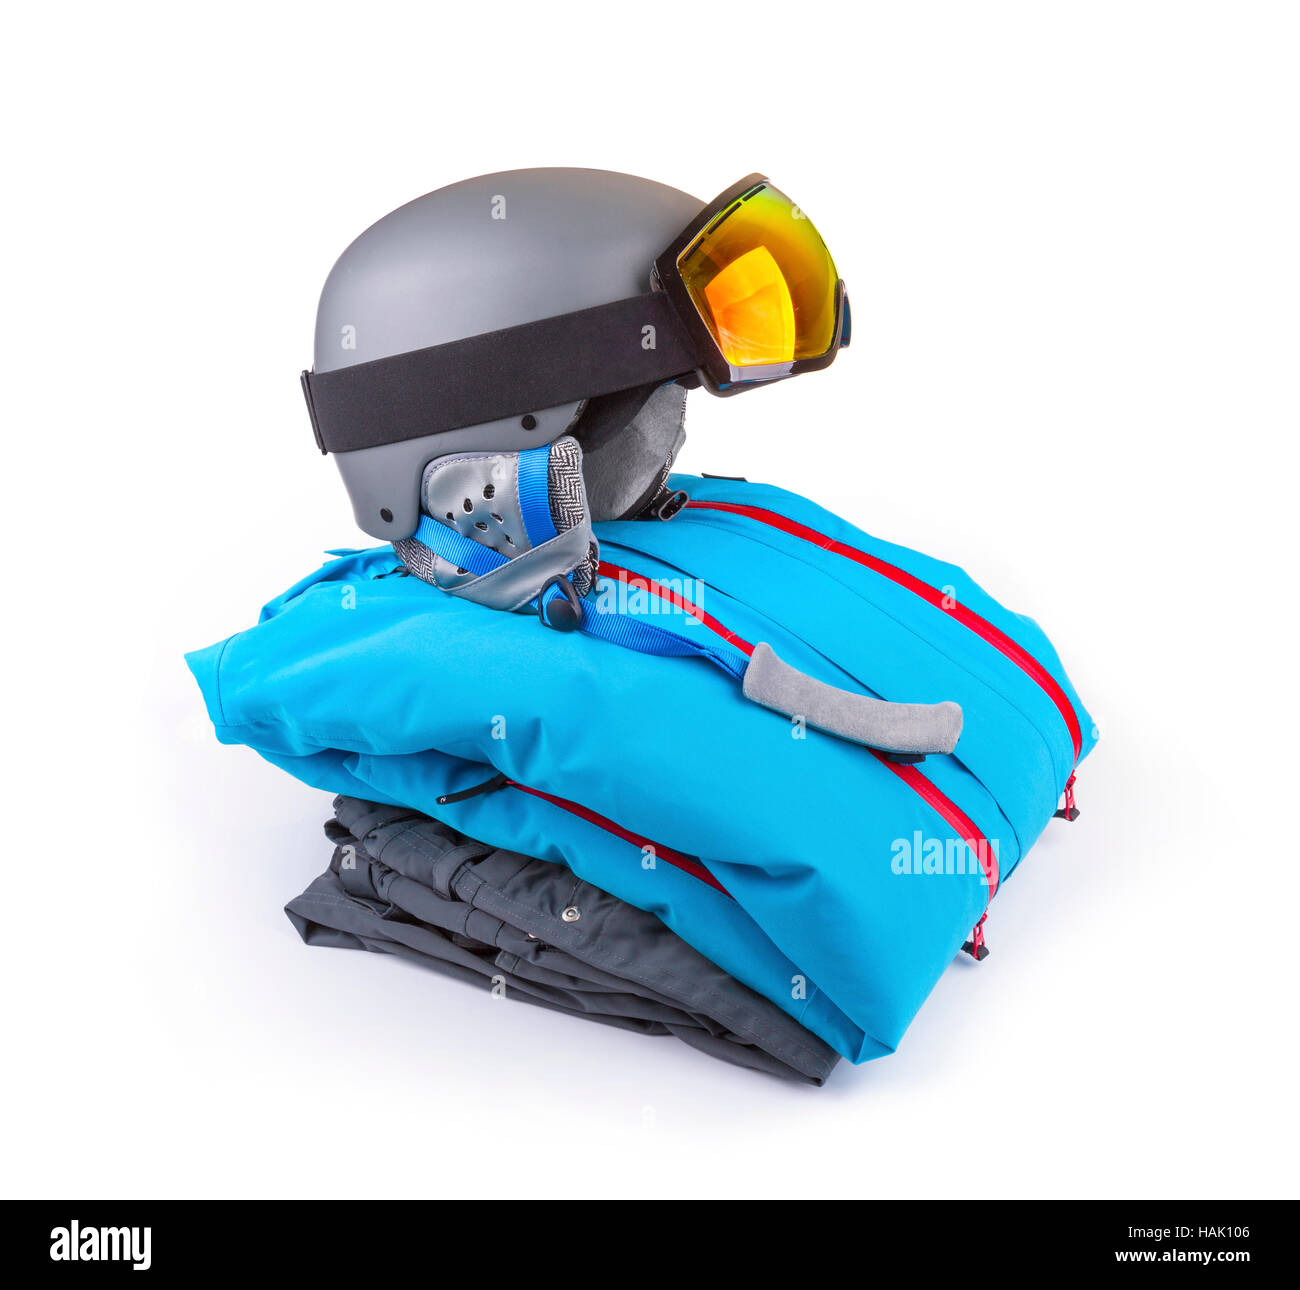 Vêtements de ski, snowboard set isolated on white Banque D'Images